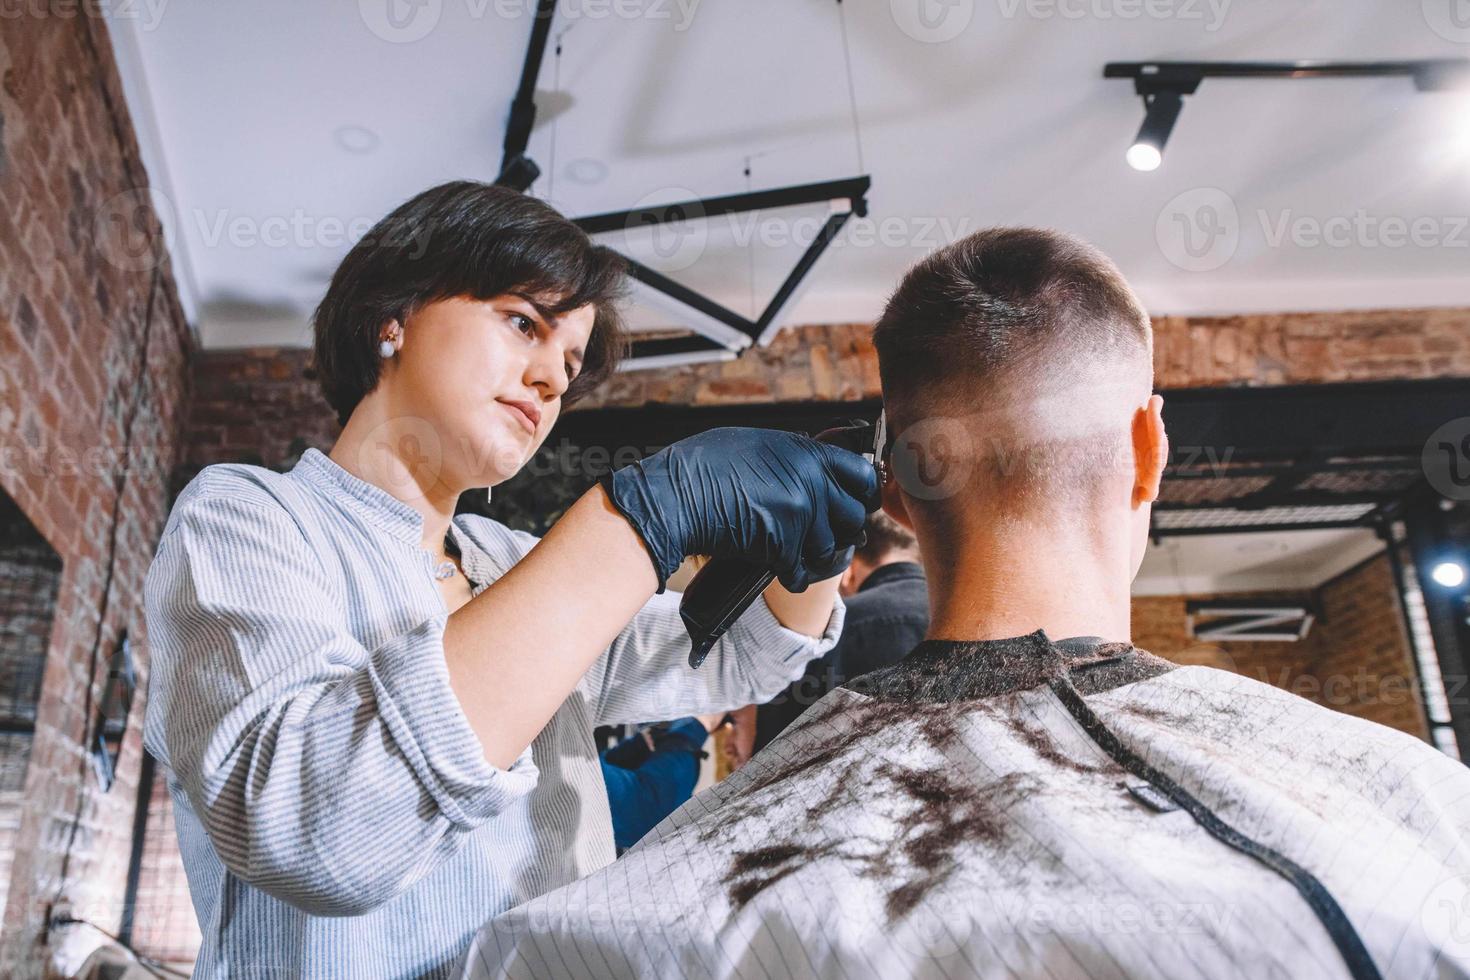 belle femme coiffeuse fait une coupe de cheveux la tête du client avec une tondeuse électrique dans un salon de coiffure. concept de publicité et de salon de coiffure. place pour le texte ou la publicité photo